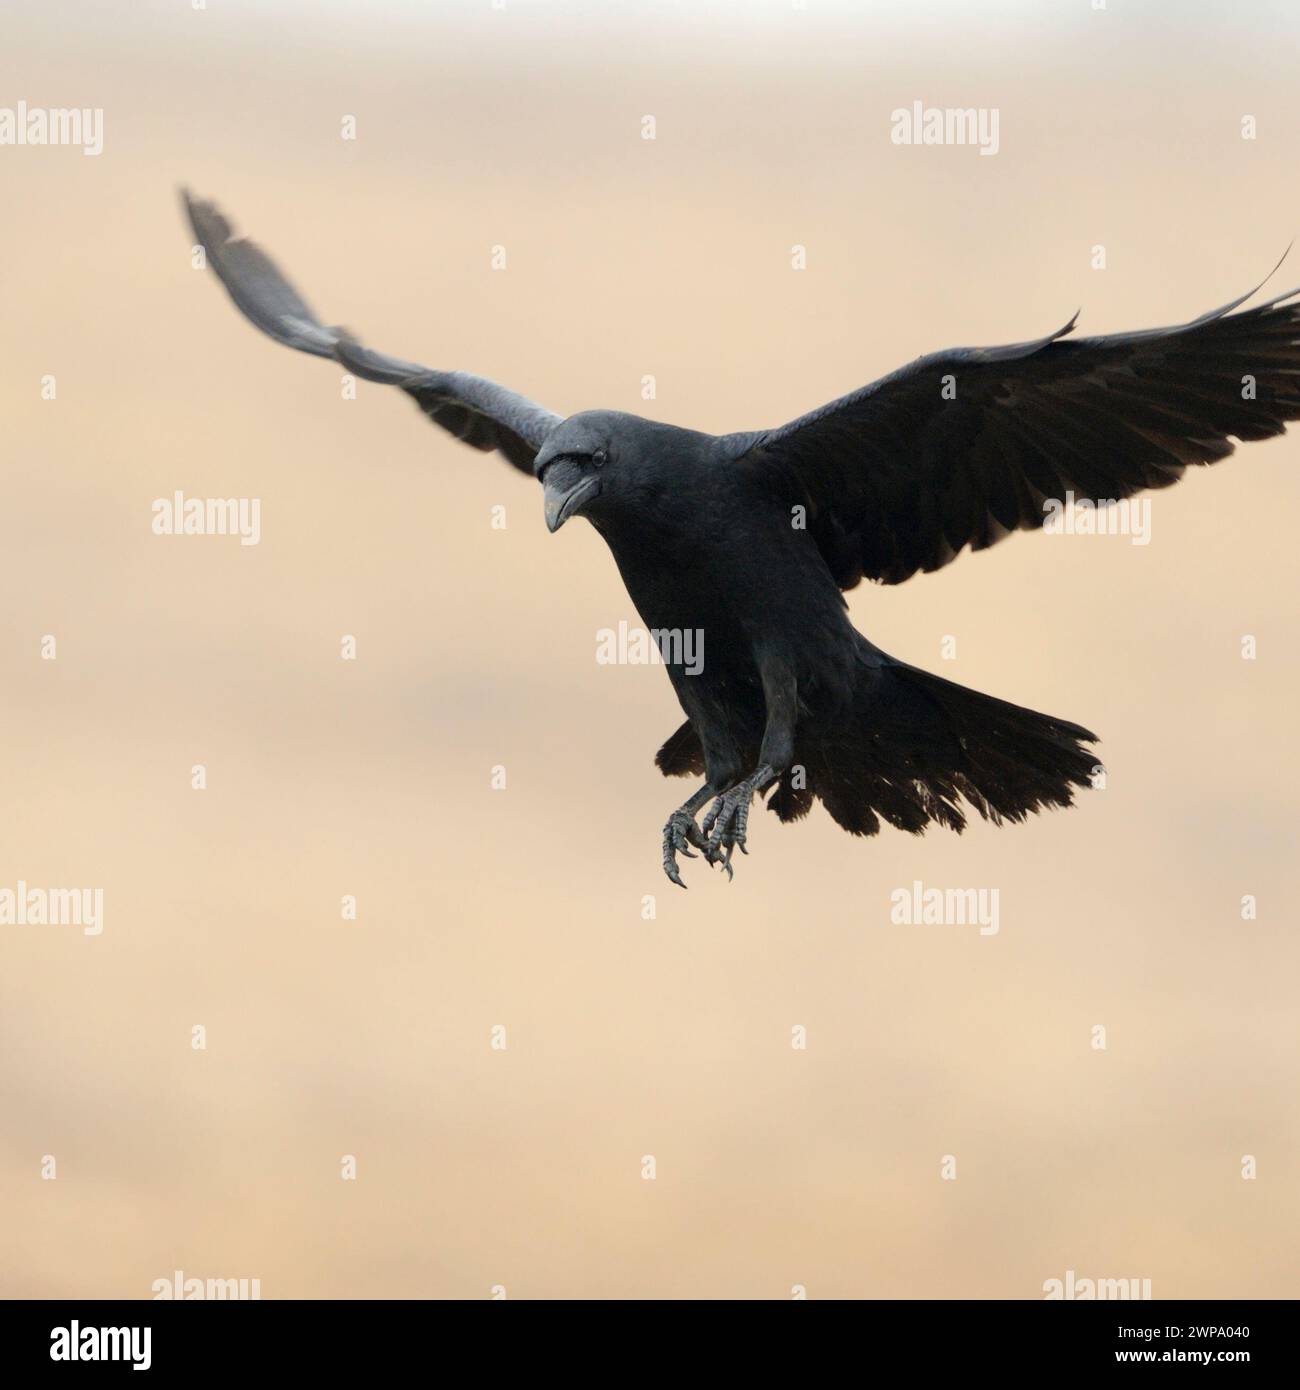 Gemeiner Rabe ( Corvus corax ) fliegt mit weit geöffneten Flügeln vor einem sauberen, schönen farbigen Hintergrund, Tierwelt, Europa. Stockfoto